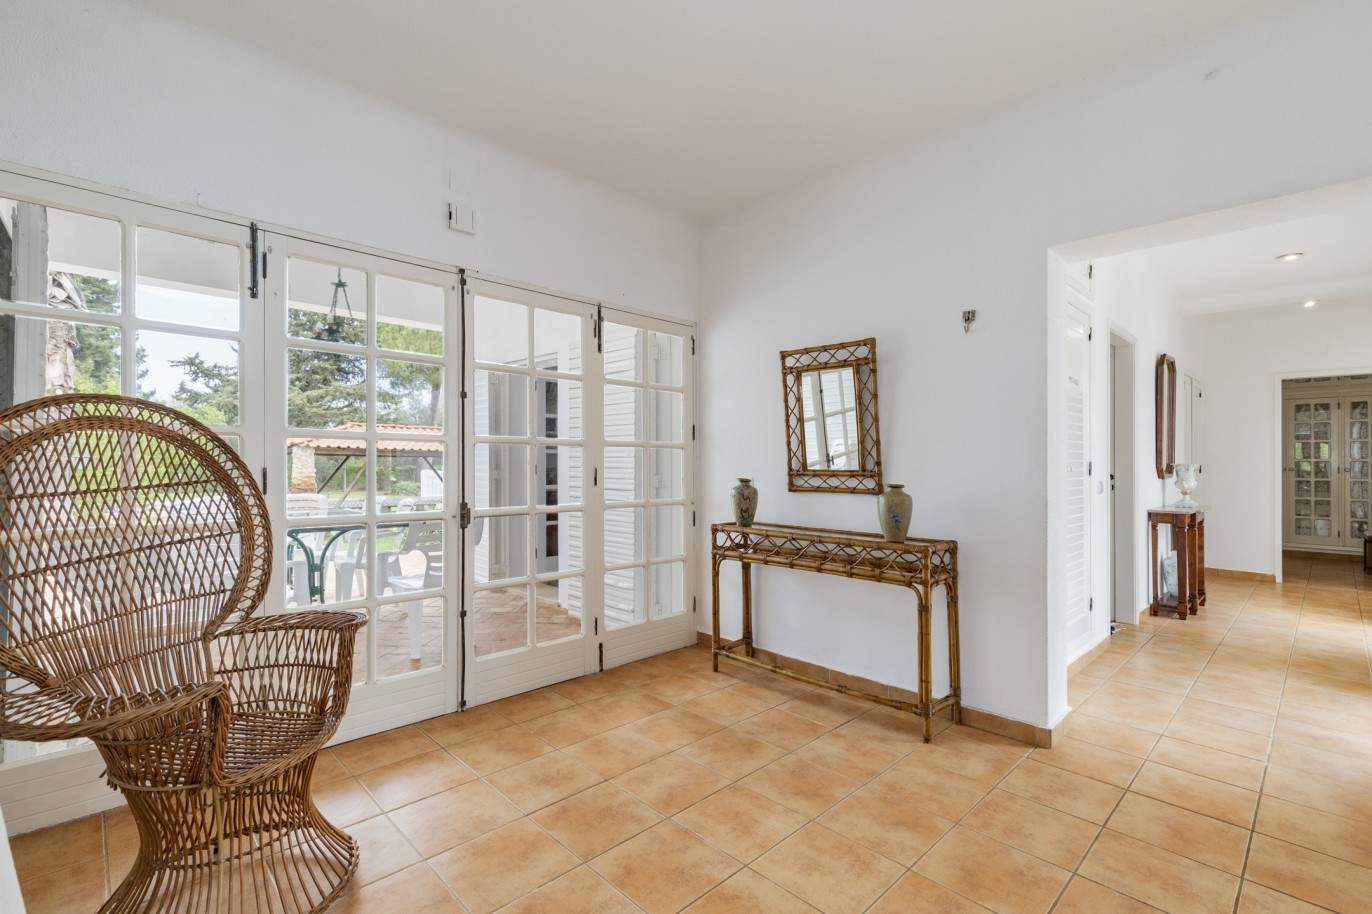 Villa rústica de 5 dormitorios con piscina, en venta en Pêra, Silves, Algarve_201837